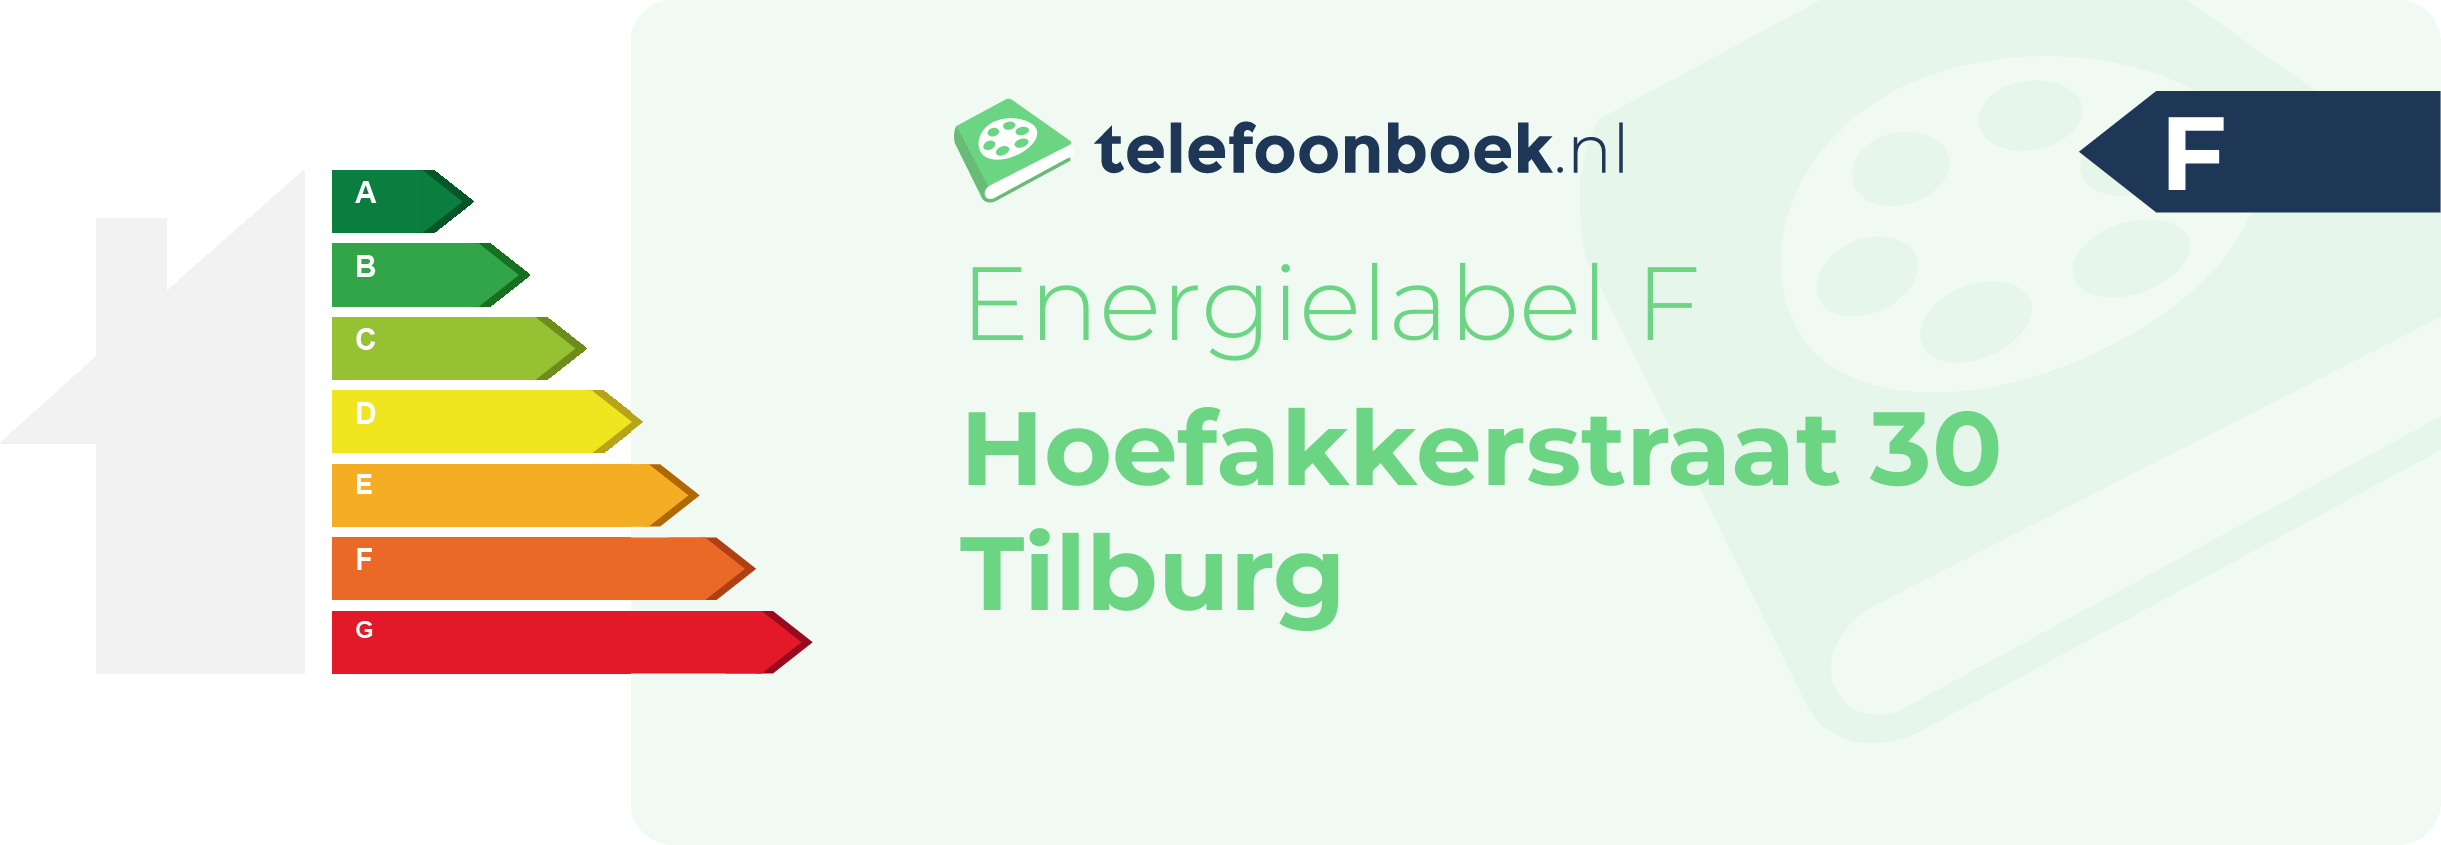 Energielabel Hoefakkerstraat 30 Tilburg